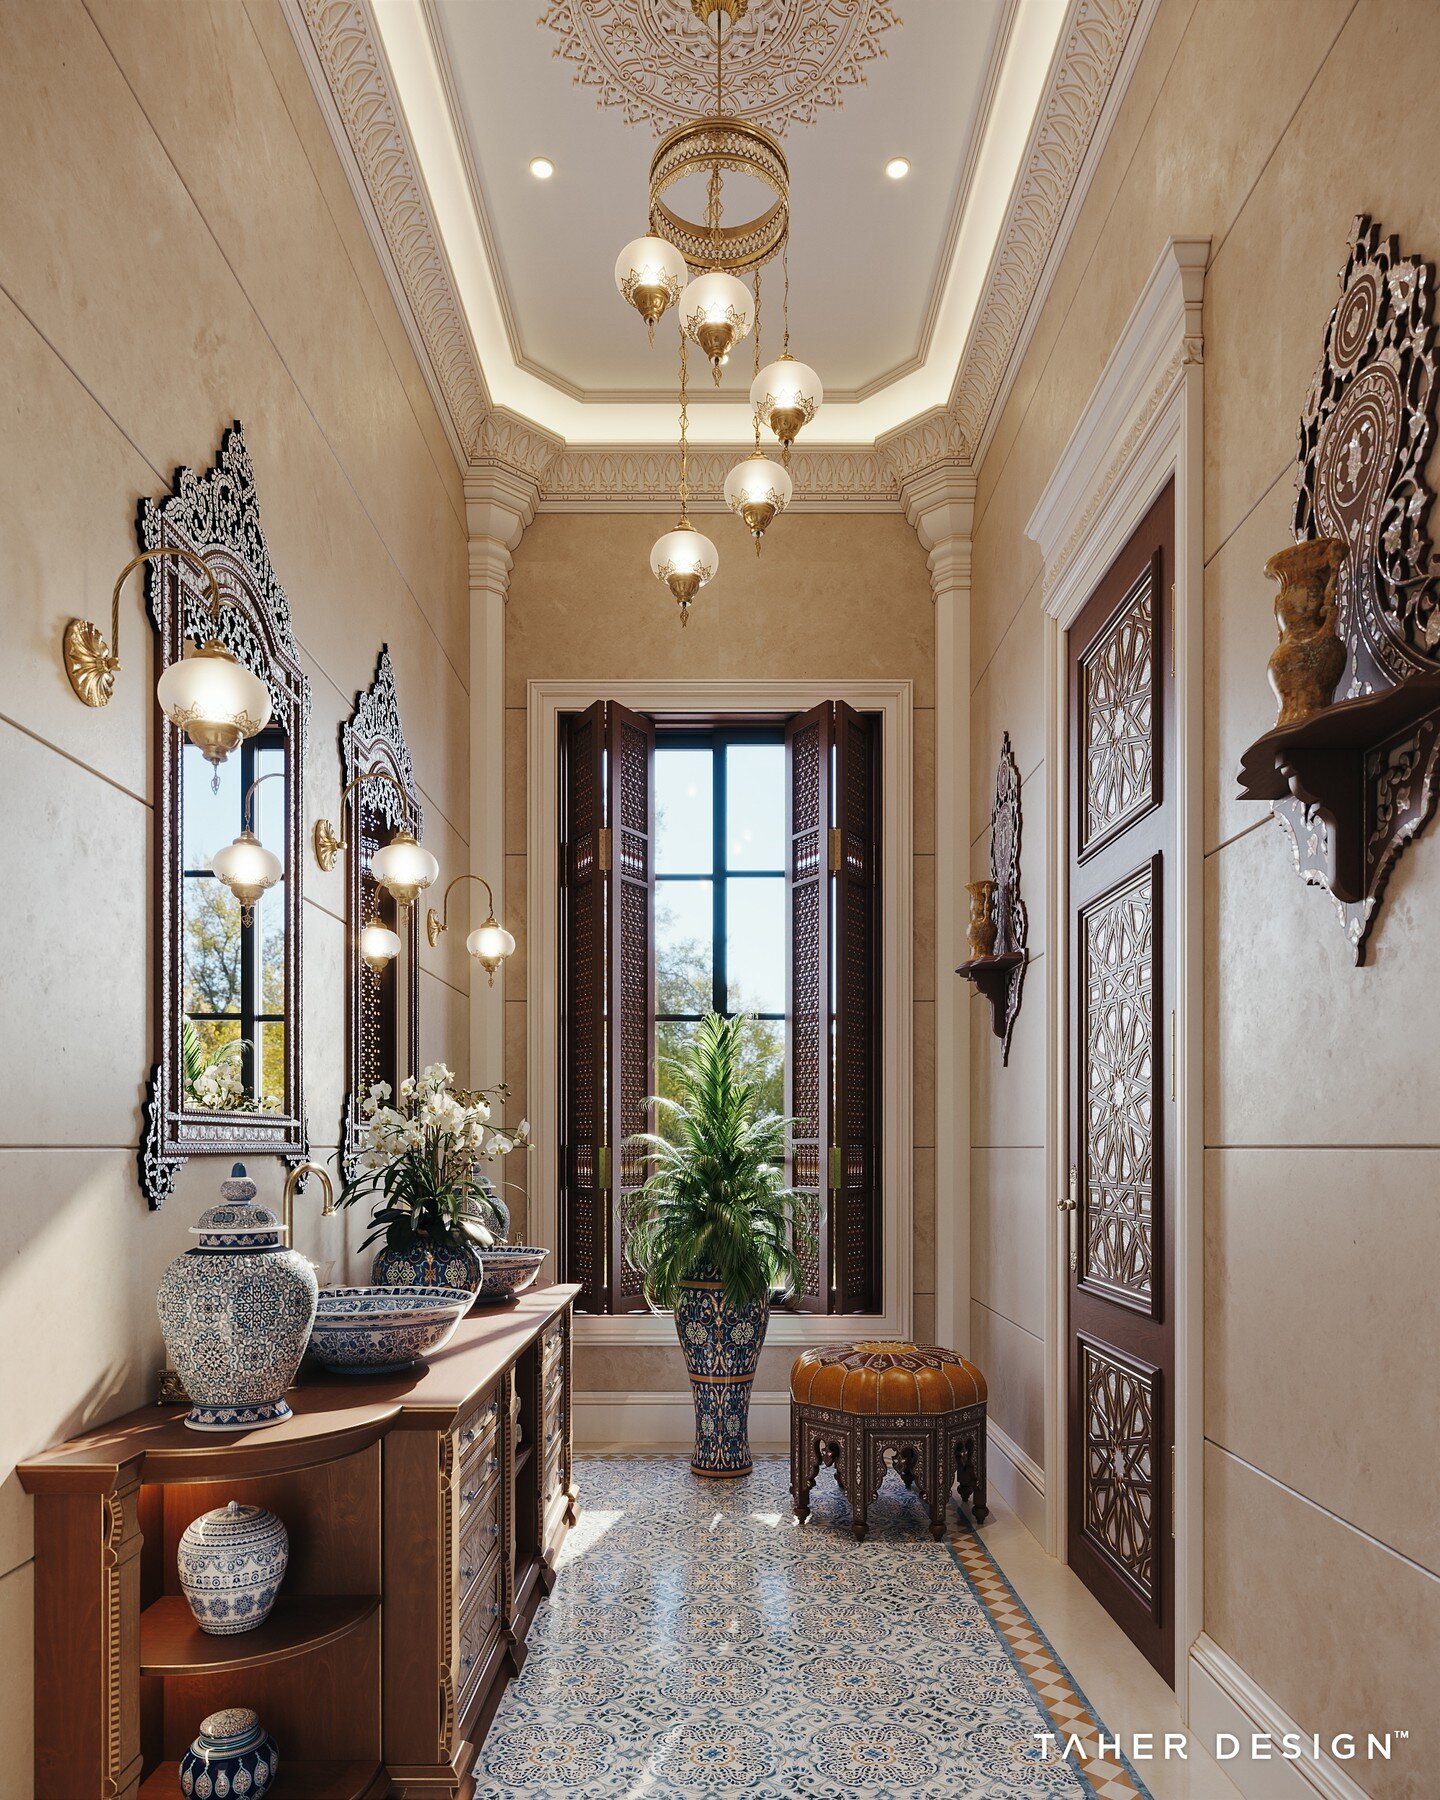 من أعمالنا تصميم داخلي لڤيلا سكنية لأحد عملاؤنا بدولة الكويت.

Oriental style washroom by Taher Design Studio for a villa in Kuwait , &copy;2023 All Rights Reserved

Tel &amp; WhatsApp : +20 120 580 0646 / contact@taherstudio.com

#interiordesign 